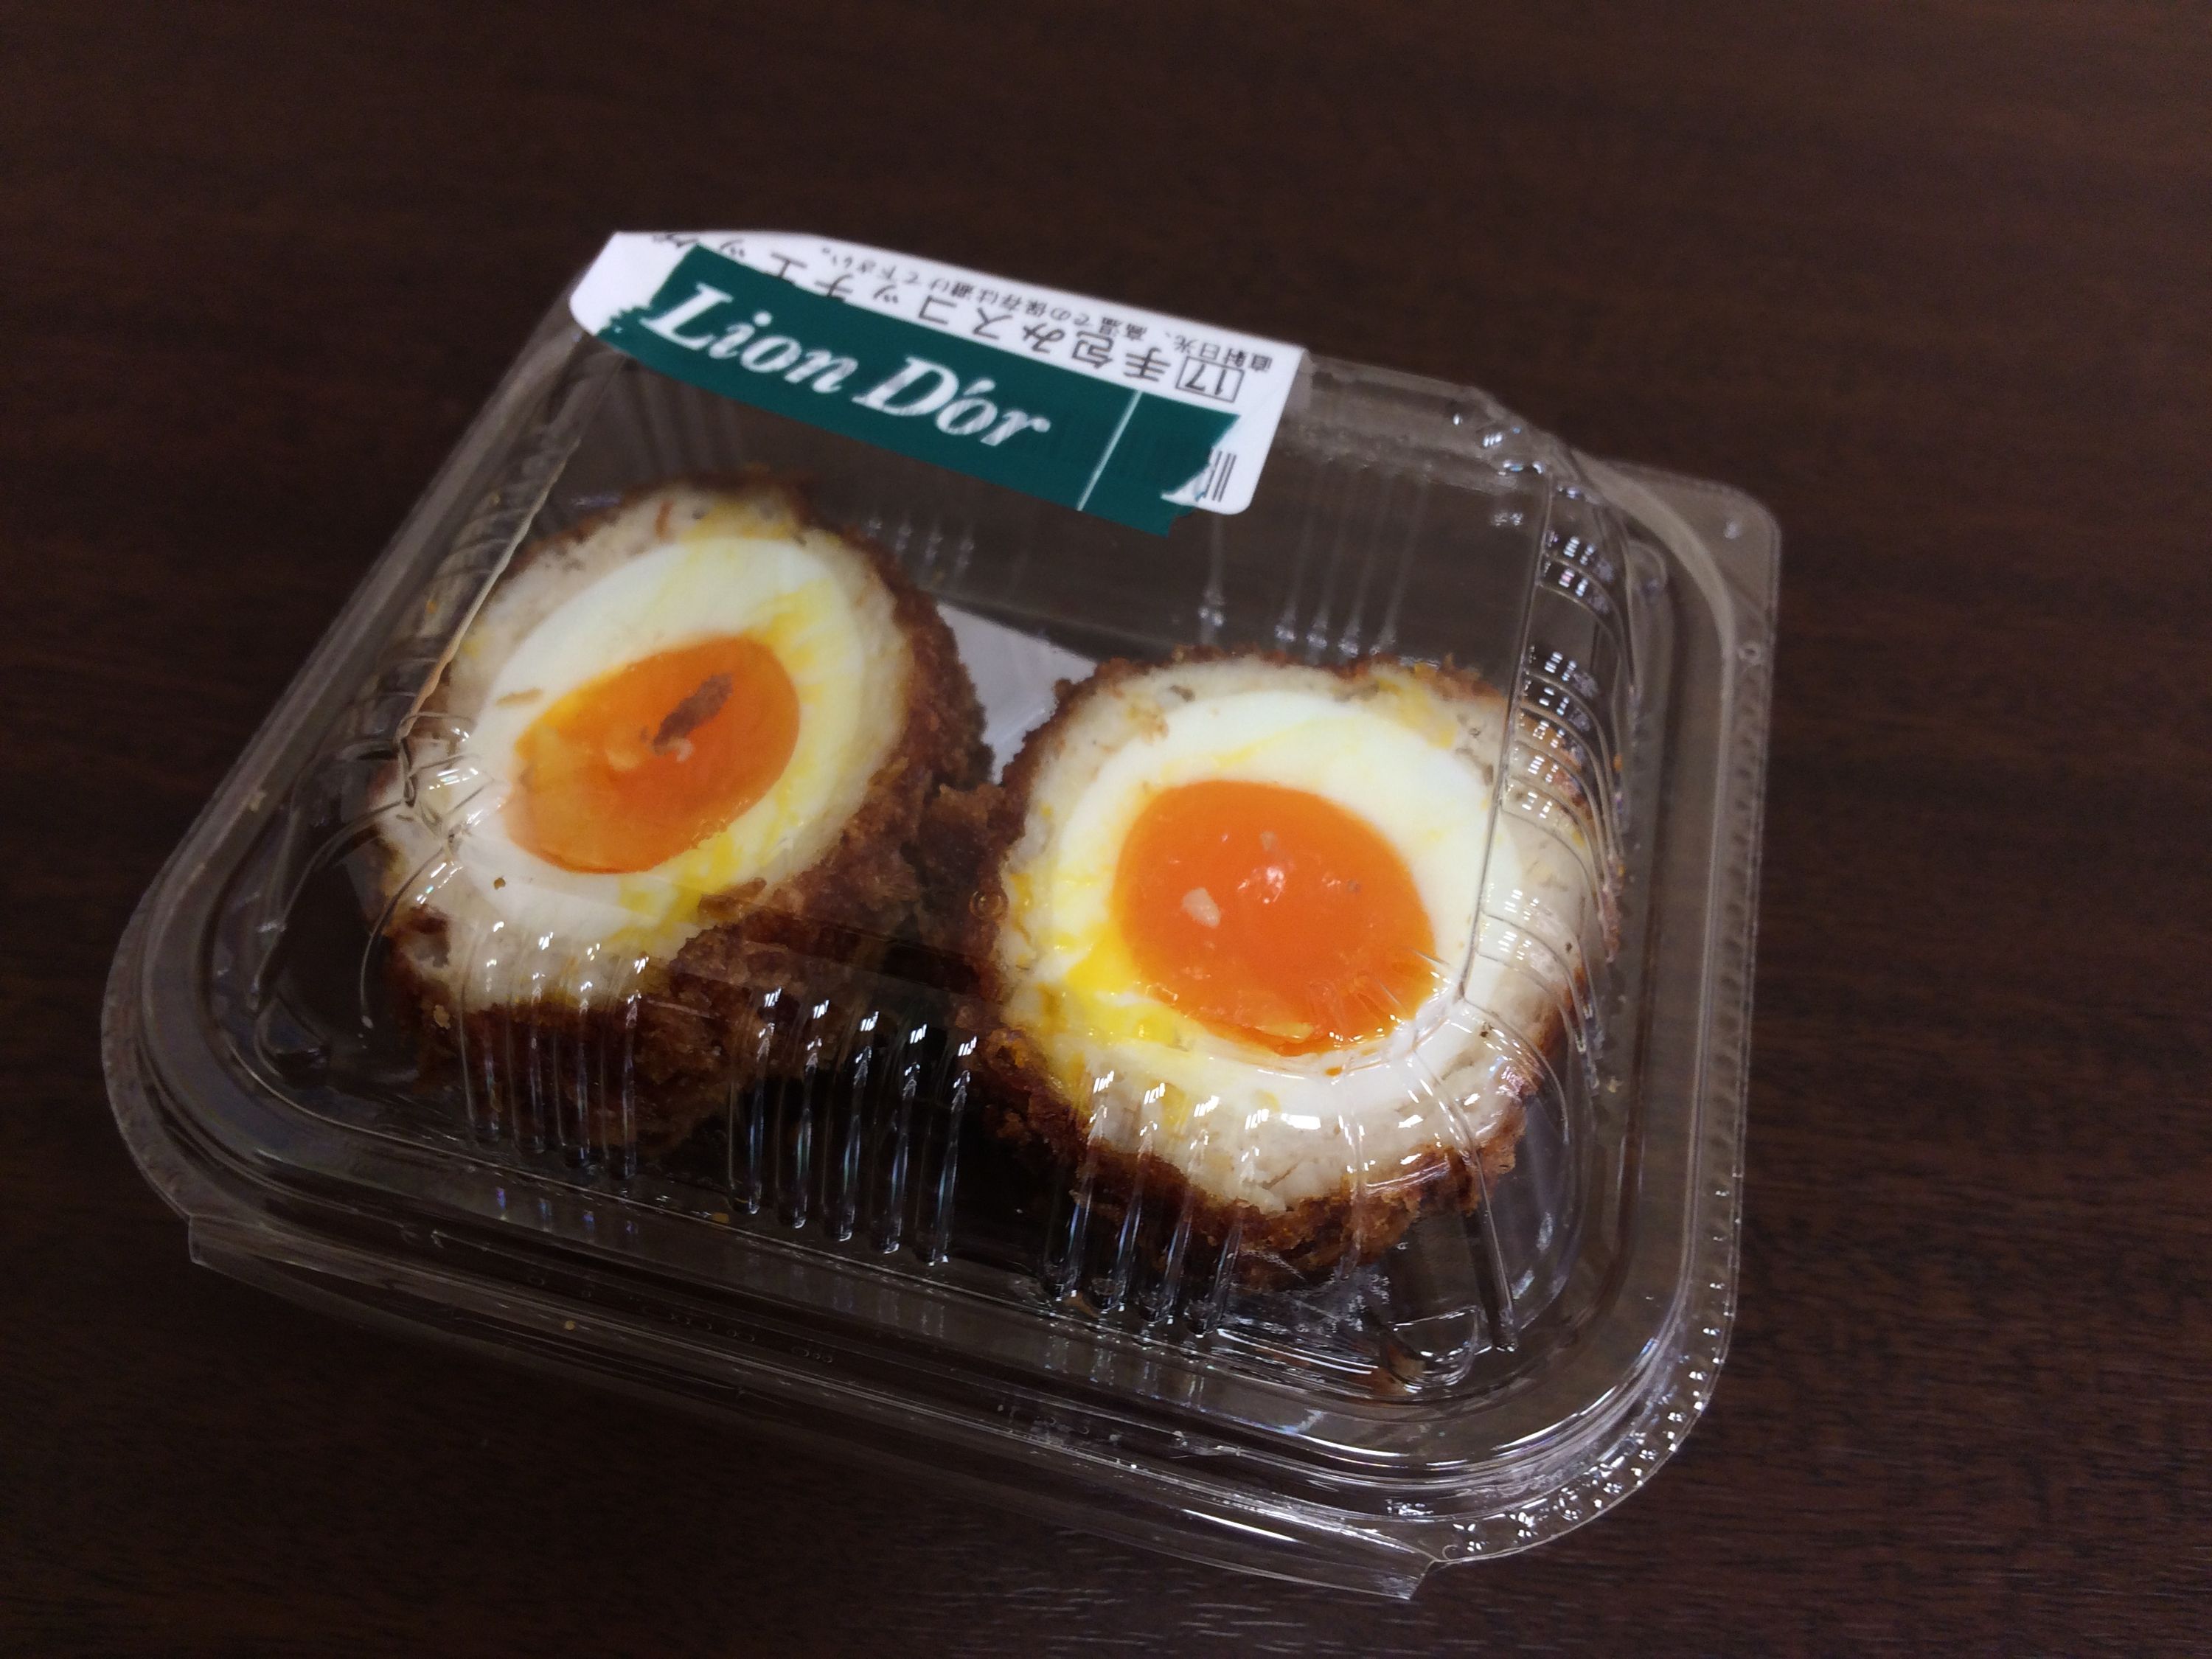 A Scotch egg in a clear plastic box.